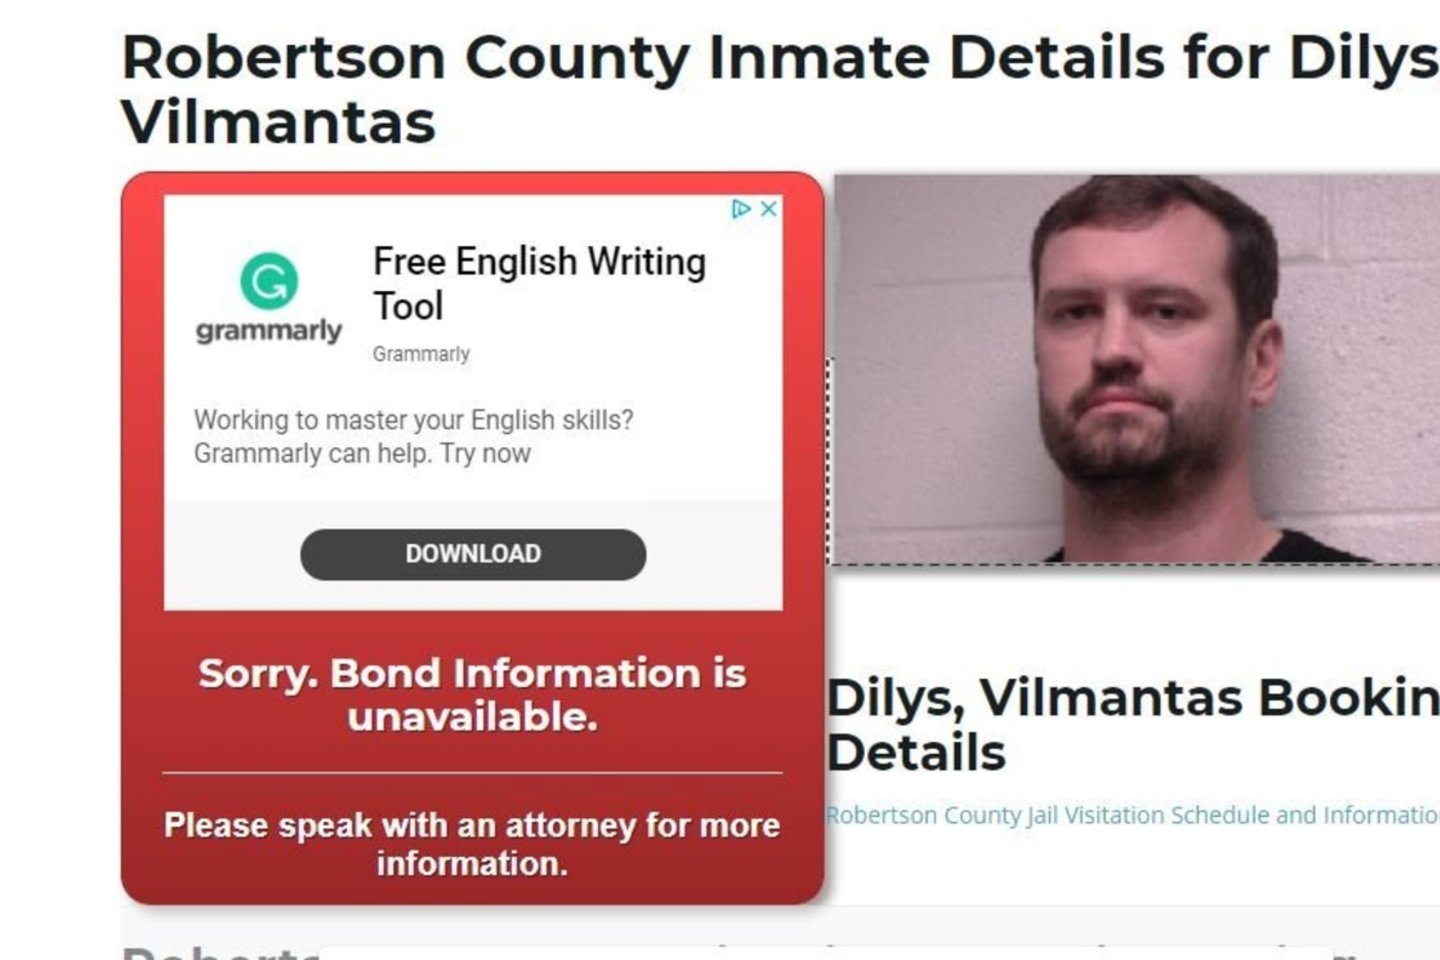 Vilmantas Dilys laukia deportacijos iš JAV<br>bailbondshq.com stop kadras